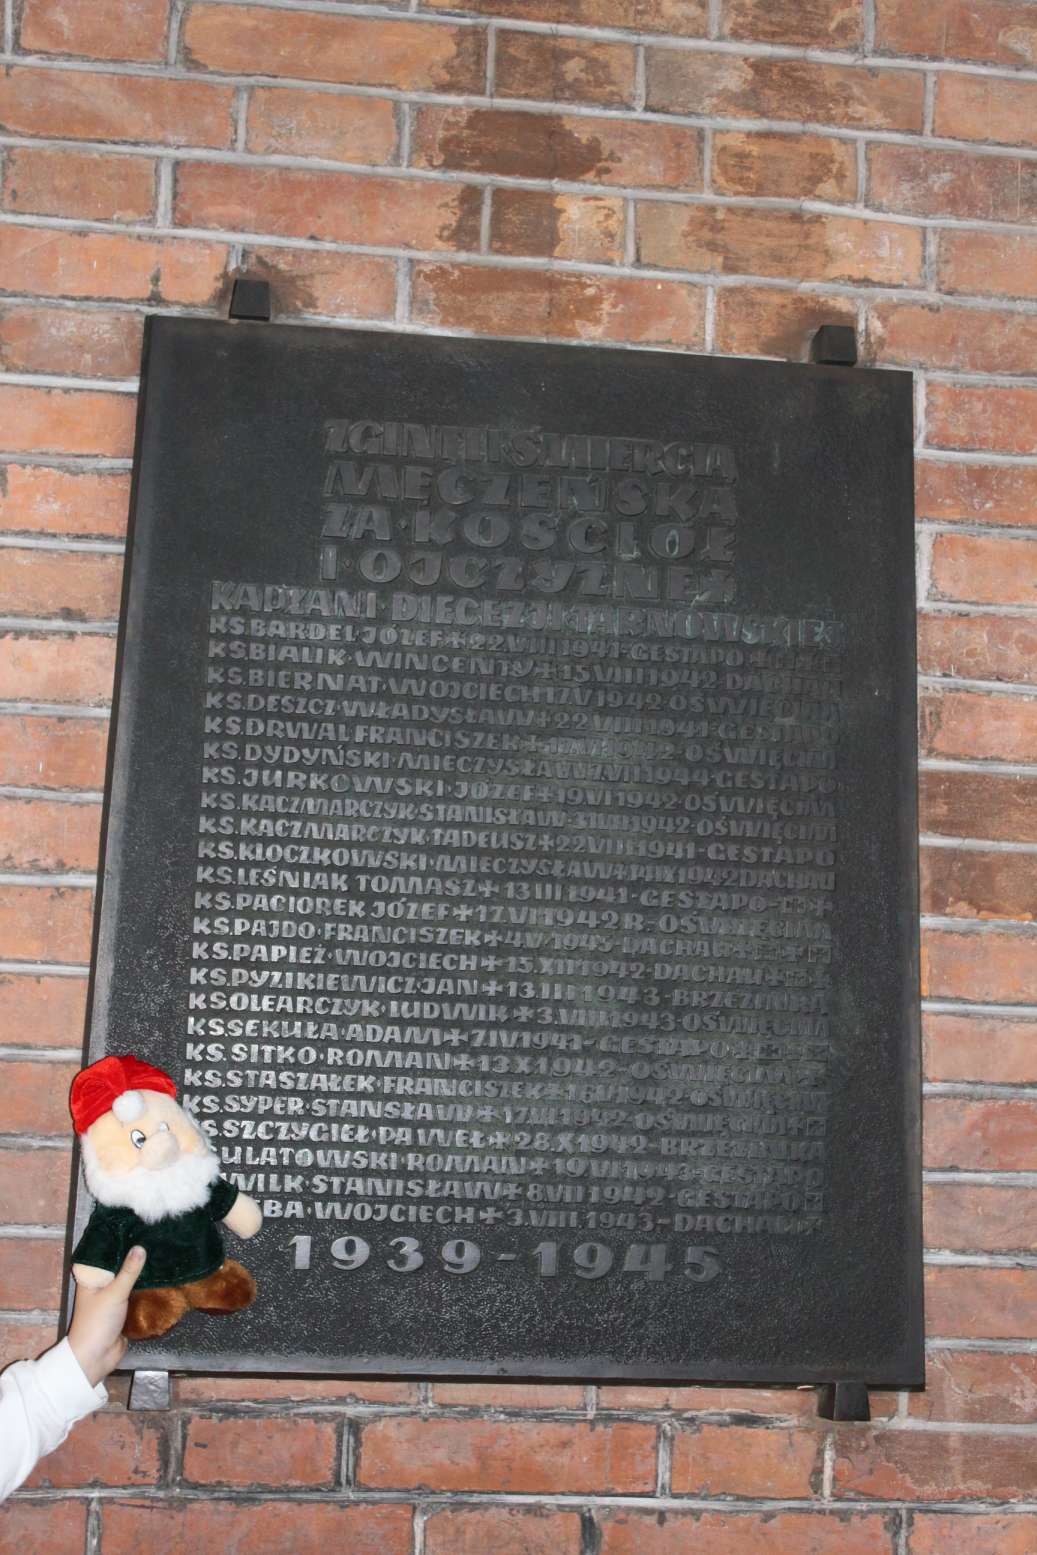 Tarnowska Katedra- tablica upamiętniająca 24 zamordowanych księży z diecezji tarnowskiej podczas II wojny światowej